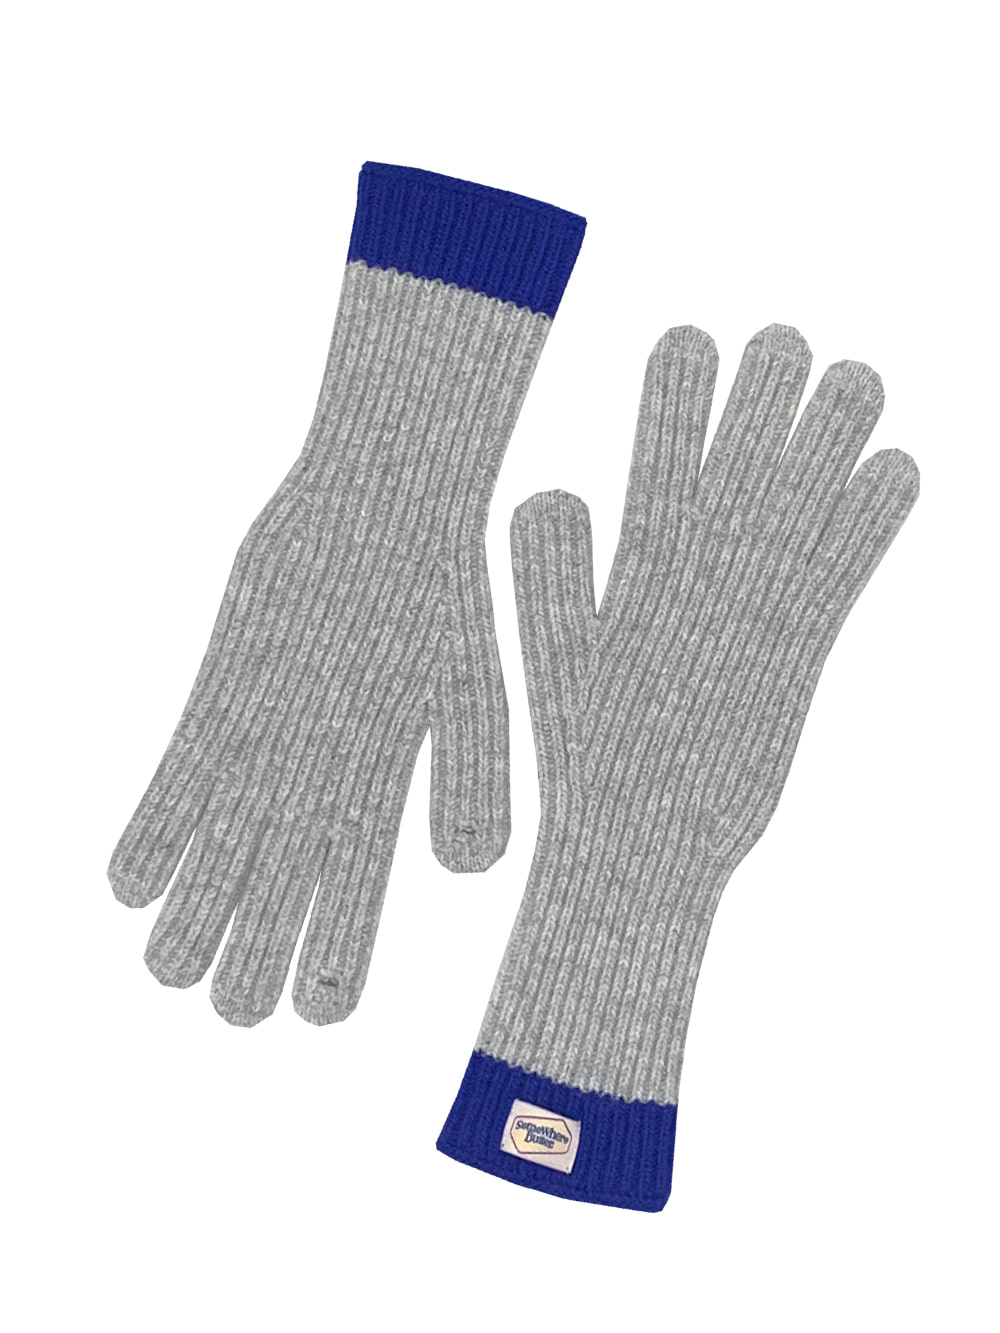 butter wool gloves - grey